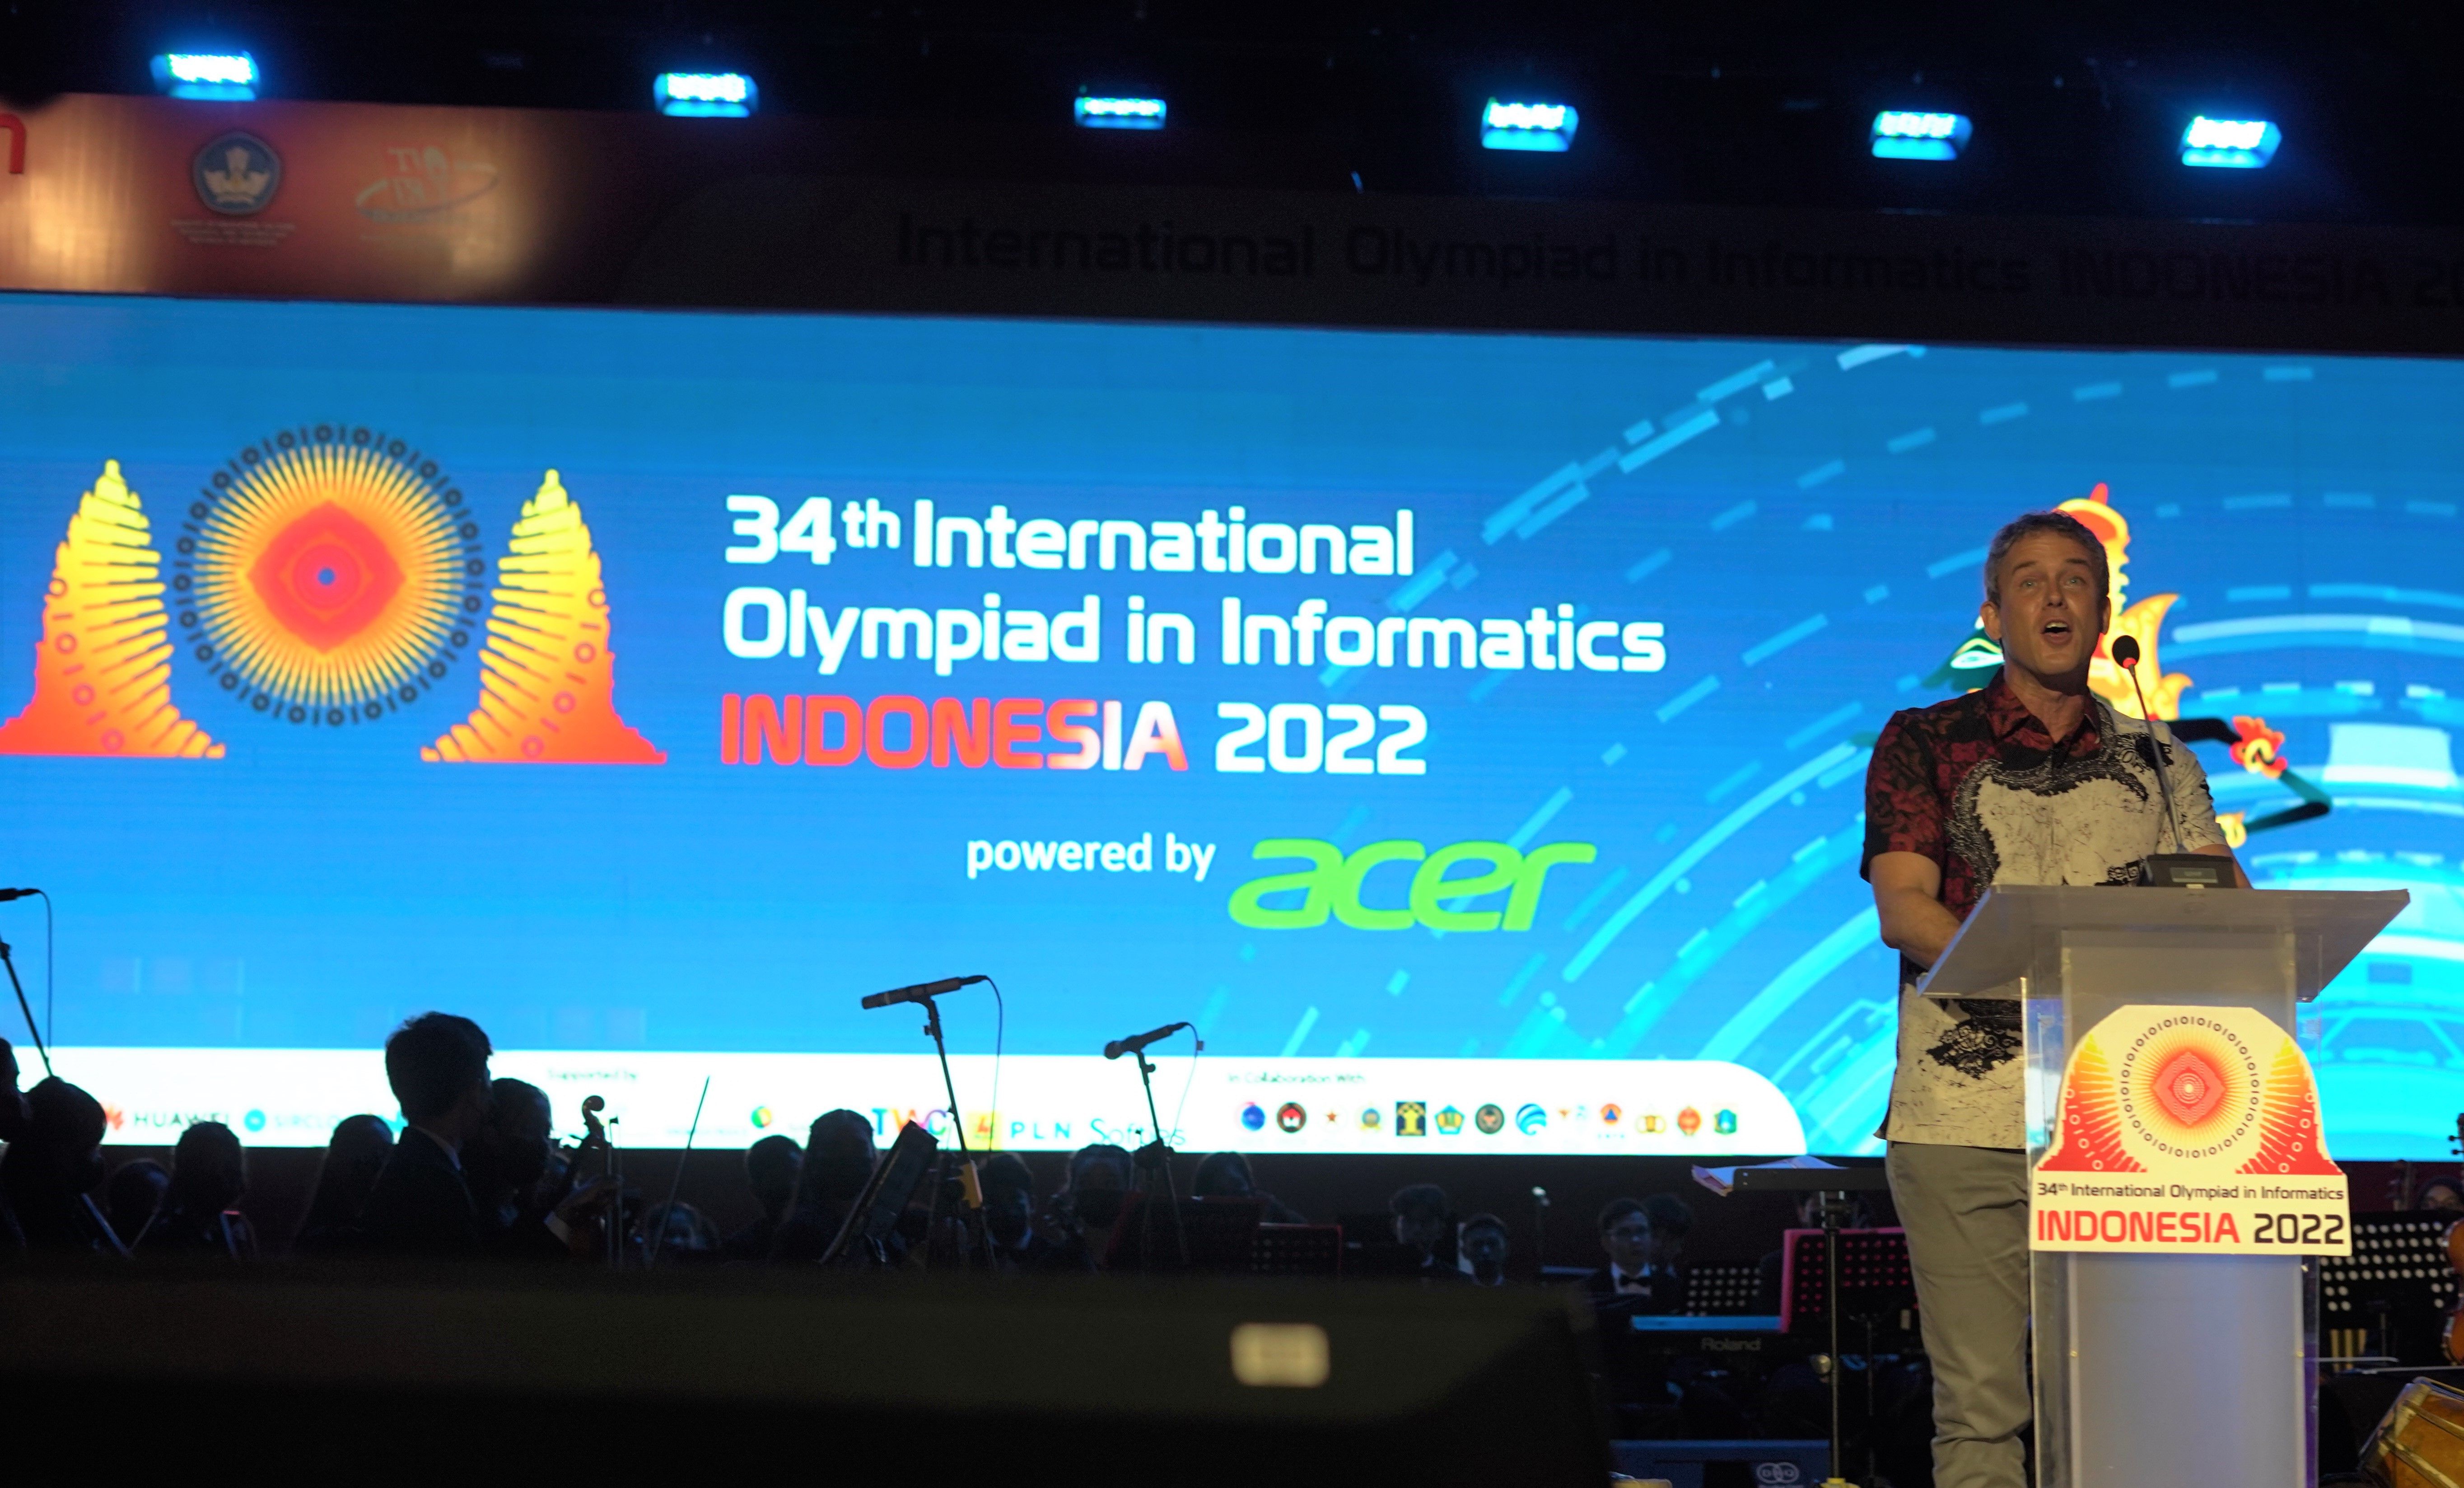 رئیس IOI، بنجامین برتون، در مراسم افتتاحیه IOI 2022 سخنرانی می کند